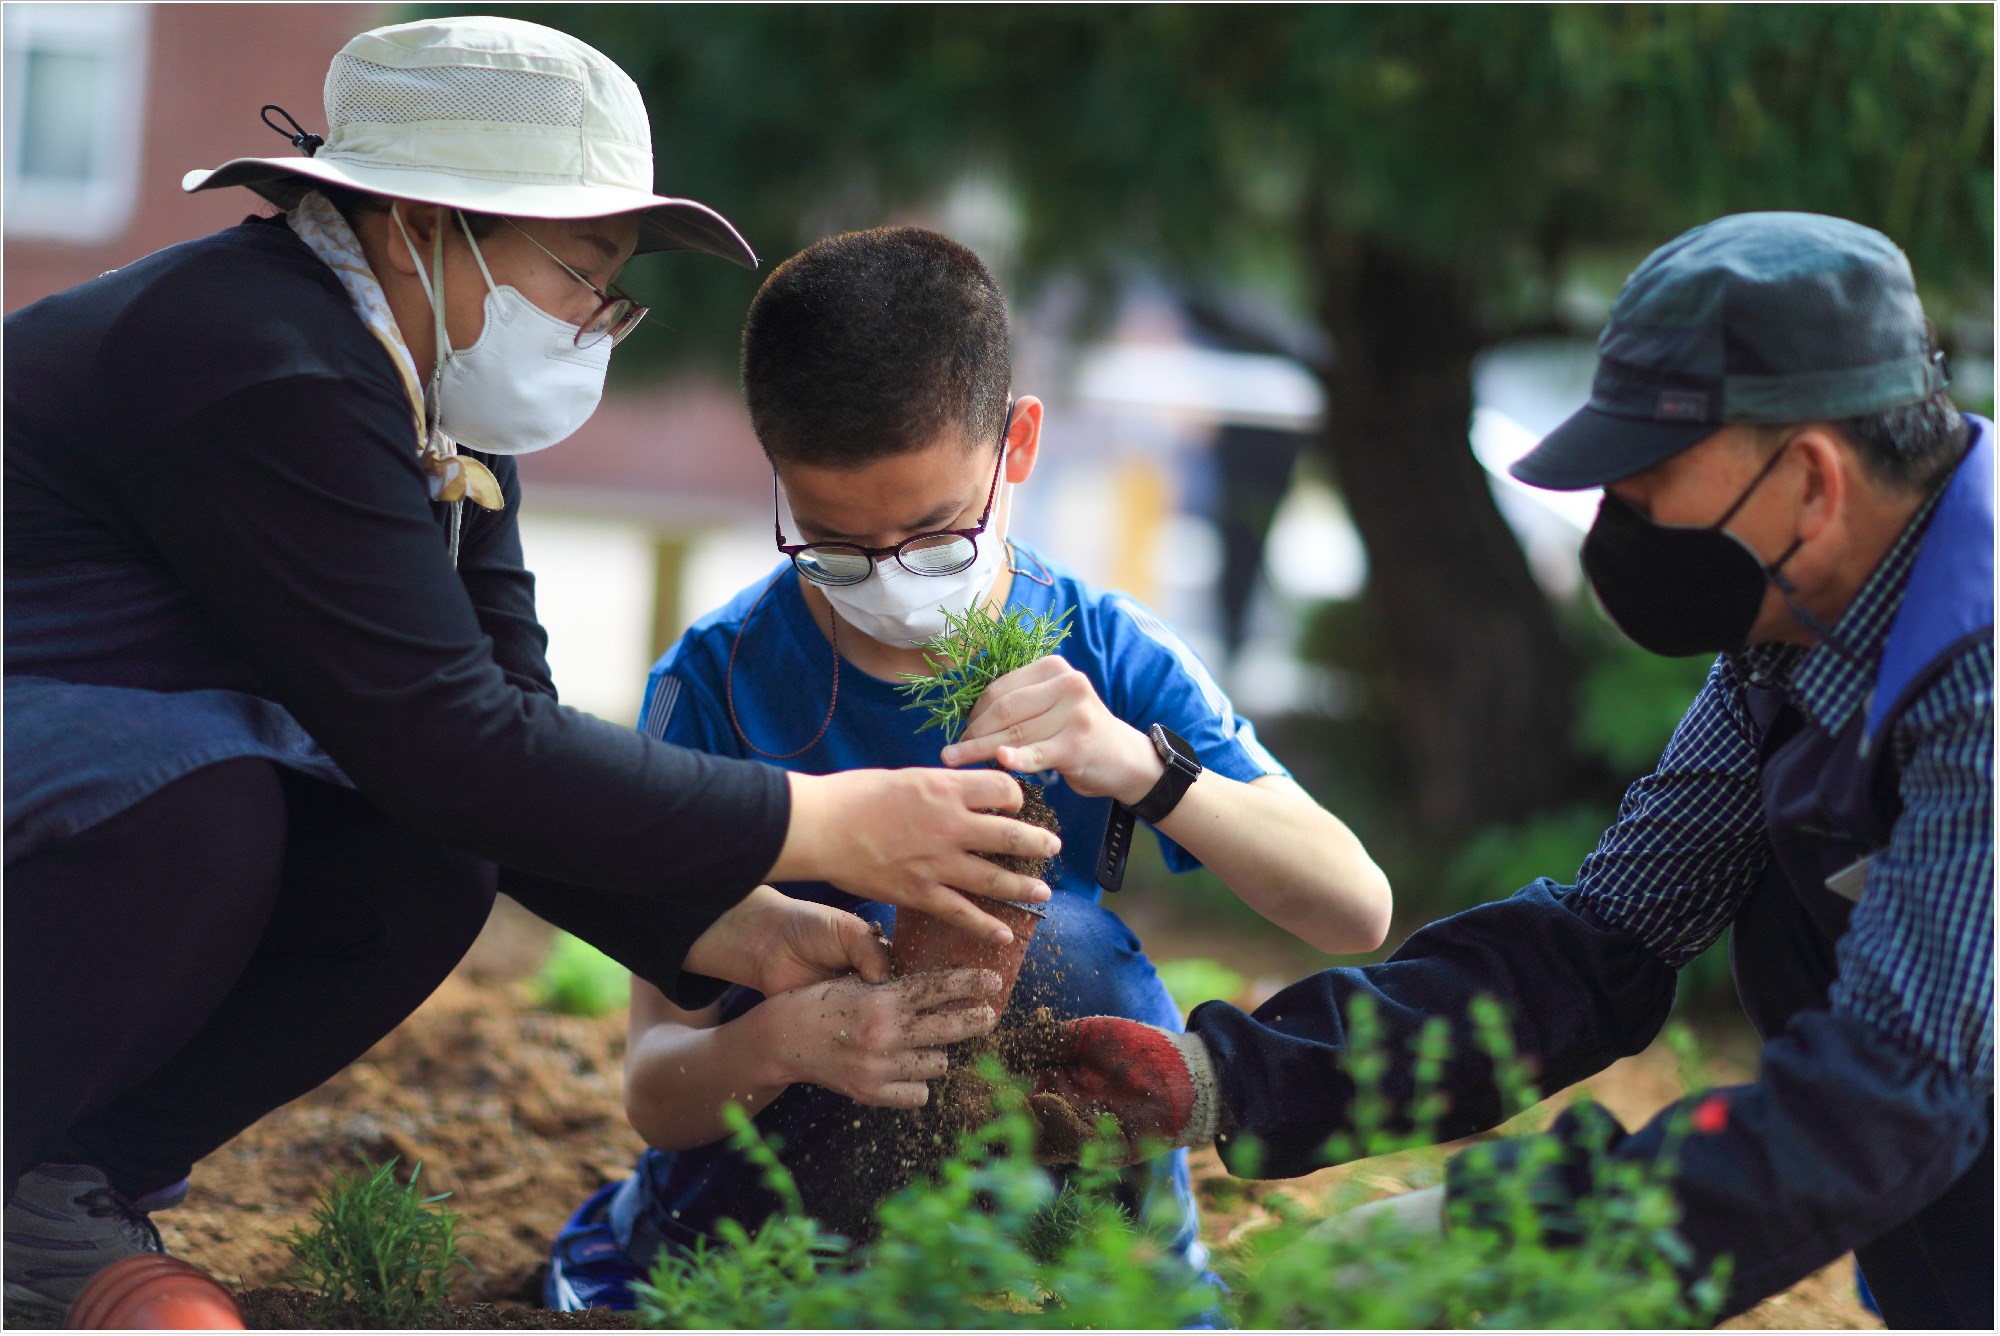 경기도 안산시에 위치한 한국선진학교의 학생들이 3일 현대위아가 조성한 학교 내 텃밭에서 식물을 가꾸고 있다. 현대위아는 한국선진학교를 ‘현대위아 초록학교’로 선정해 ‘희귀식물 정원’, ‘온실 텃밭’, ‘포켓 정원’ 등을 만들었다.